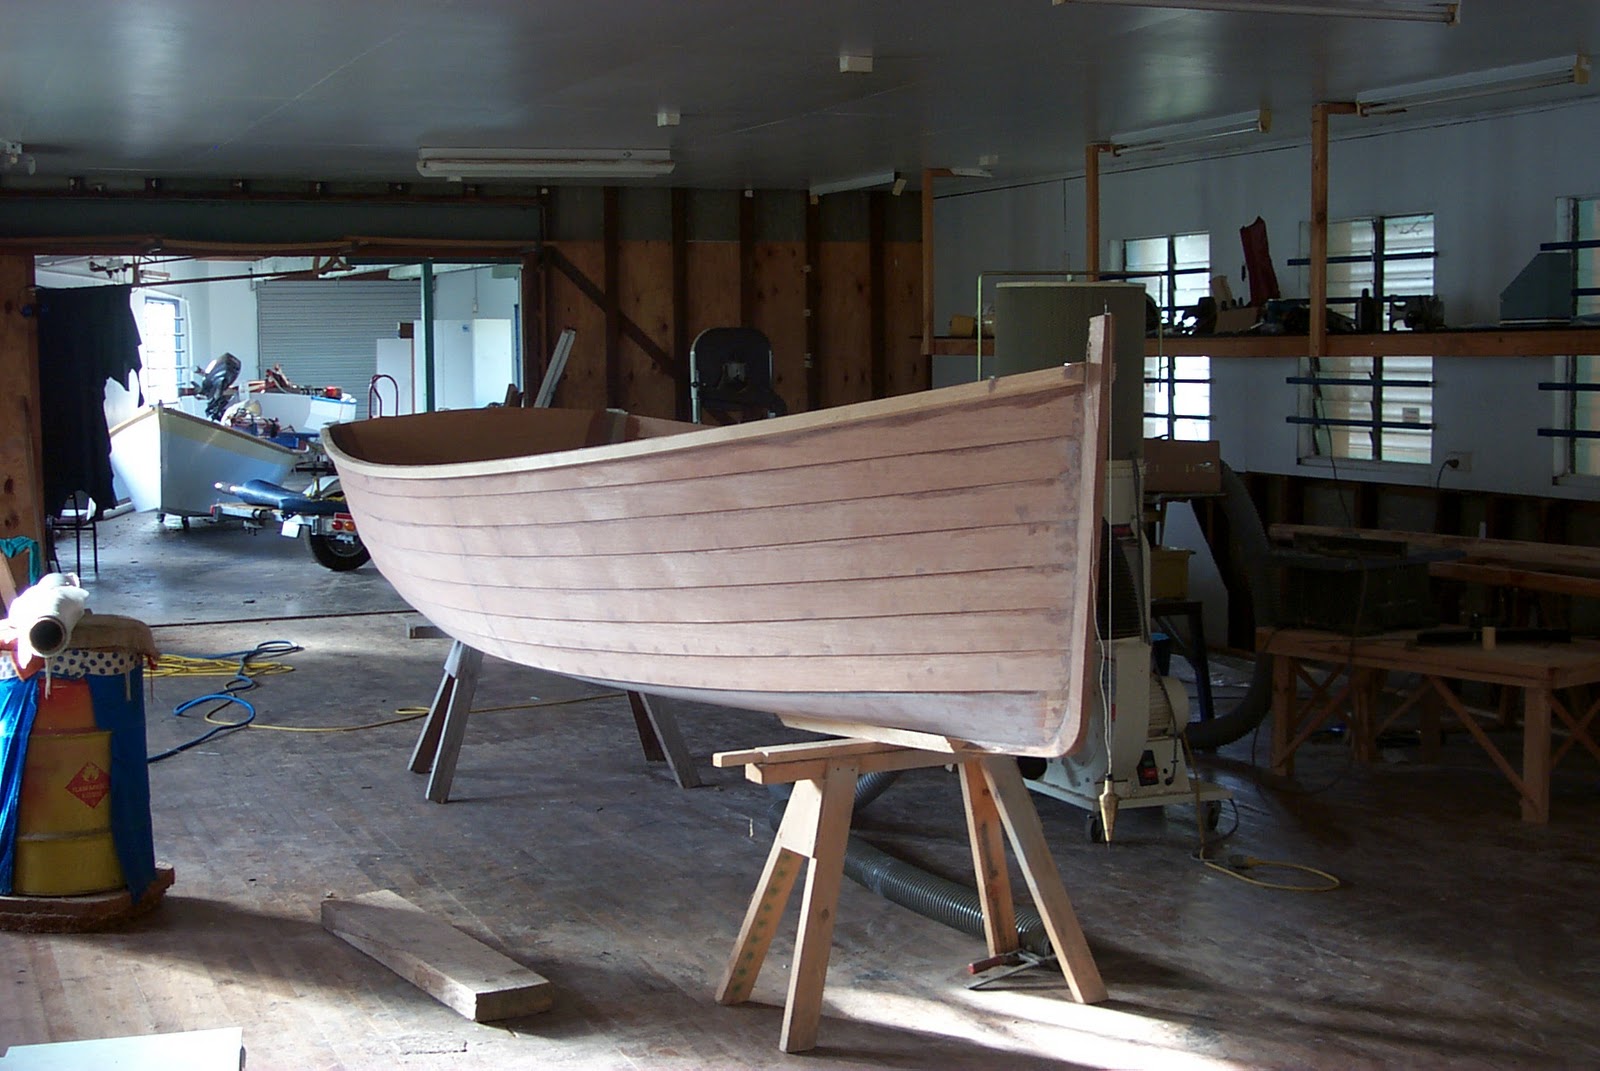 ross lillistone wooden boats: spiling lapstrake planks